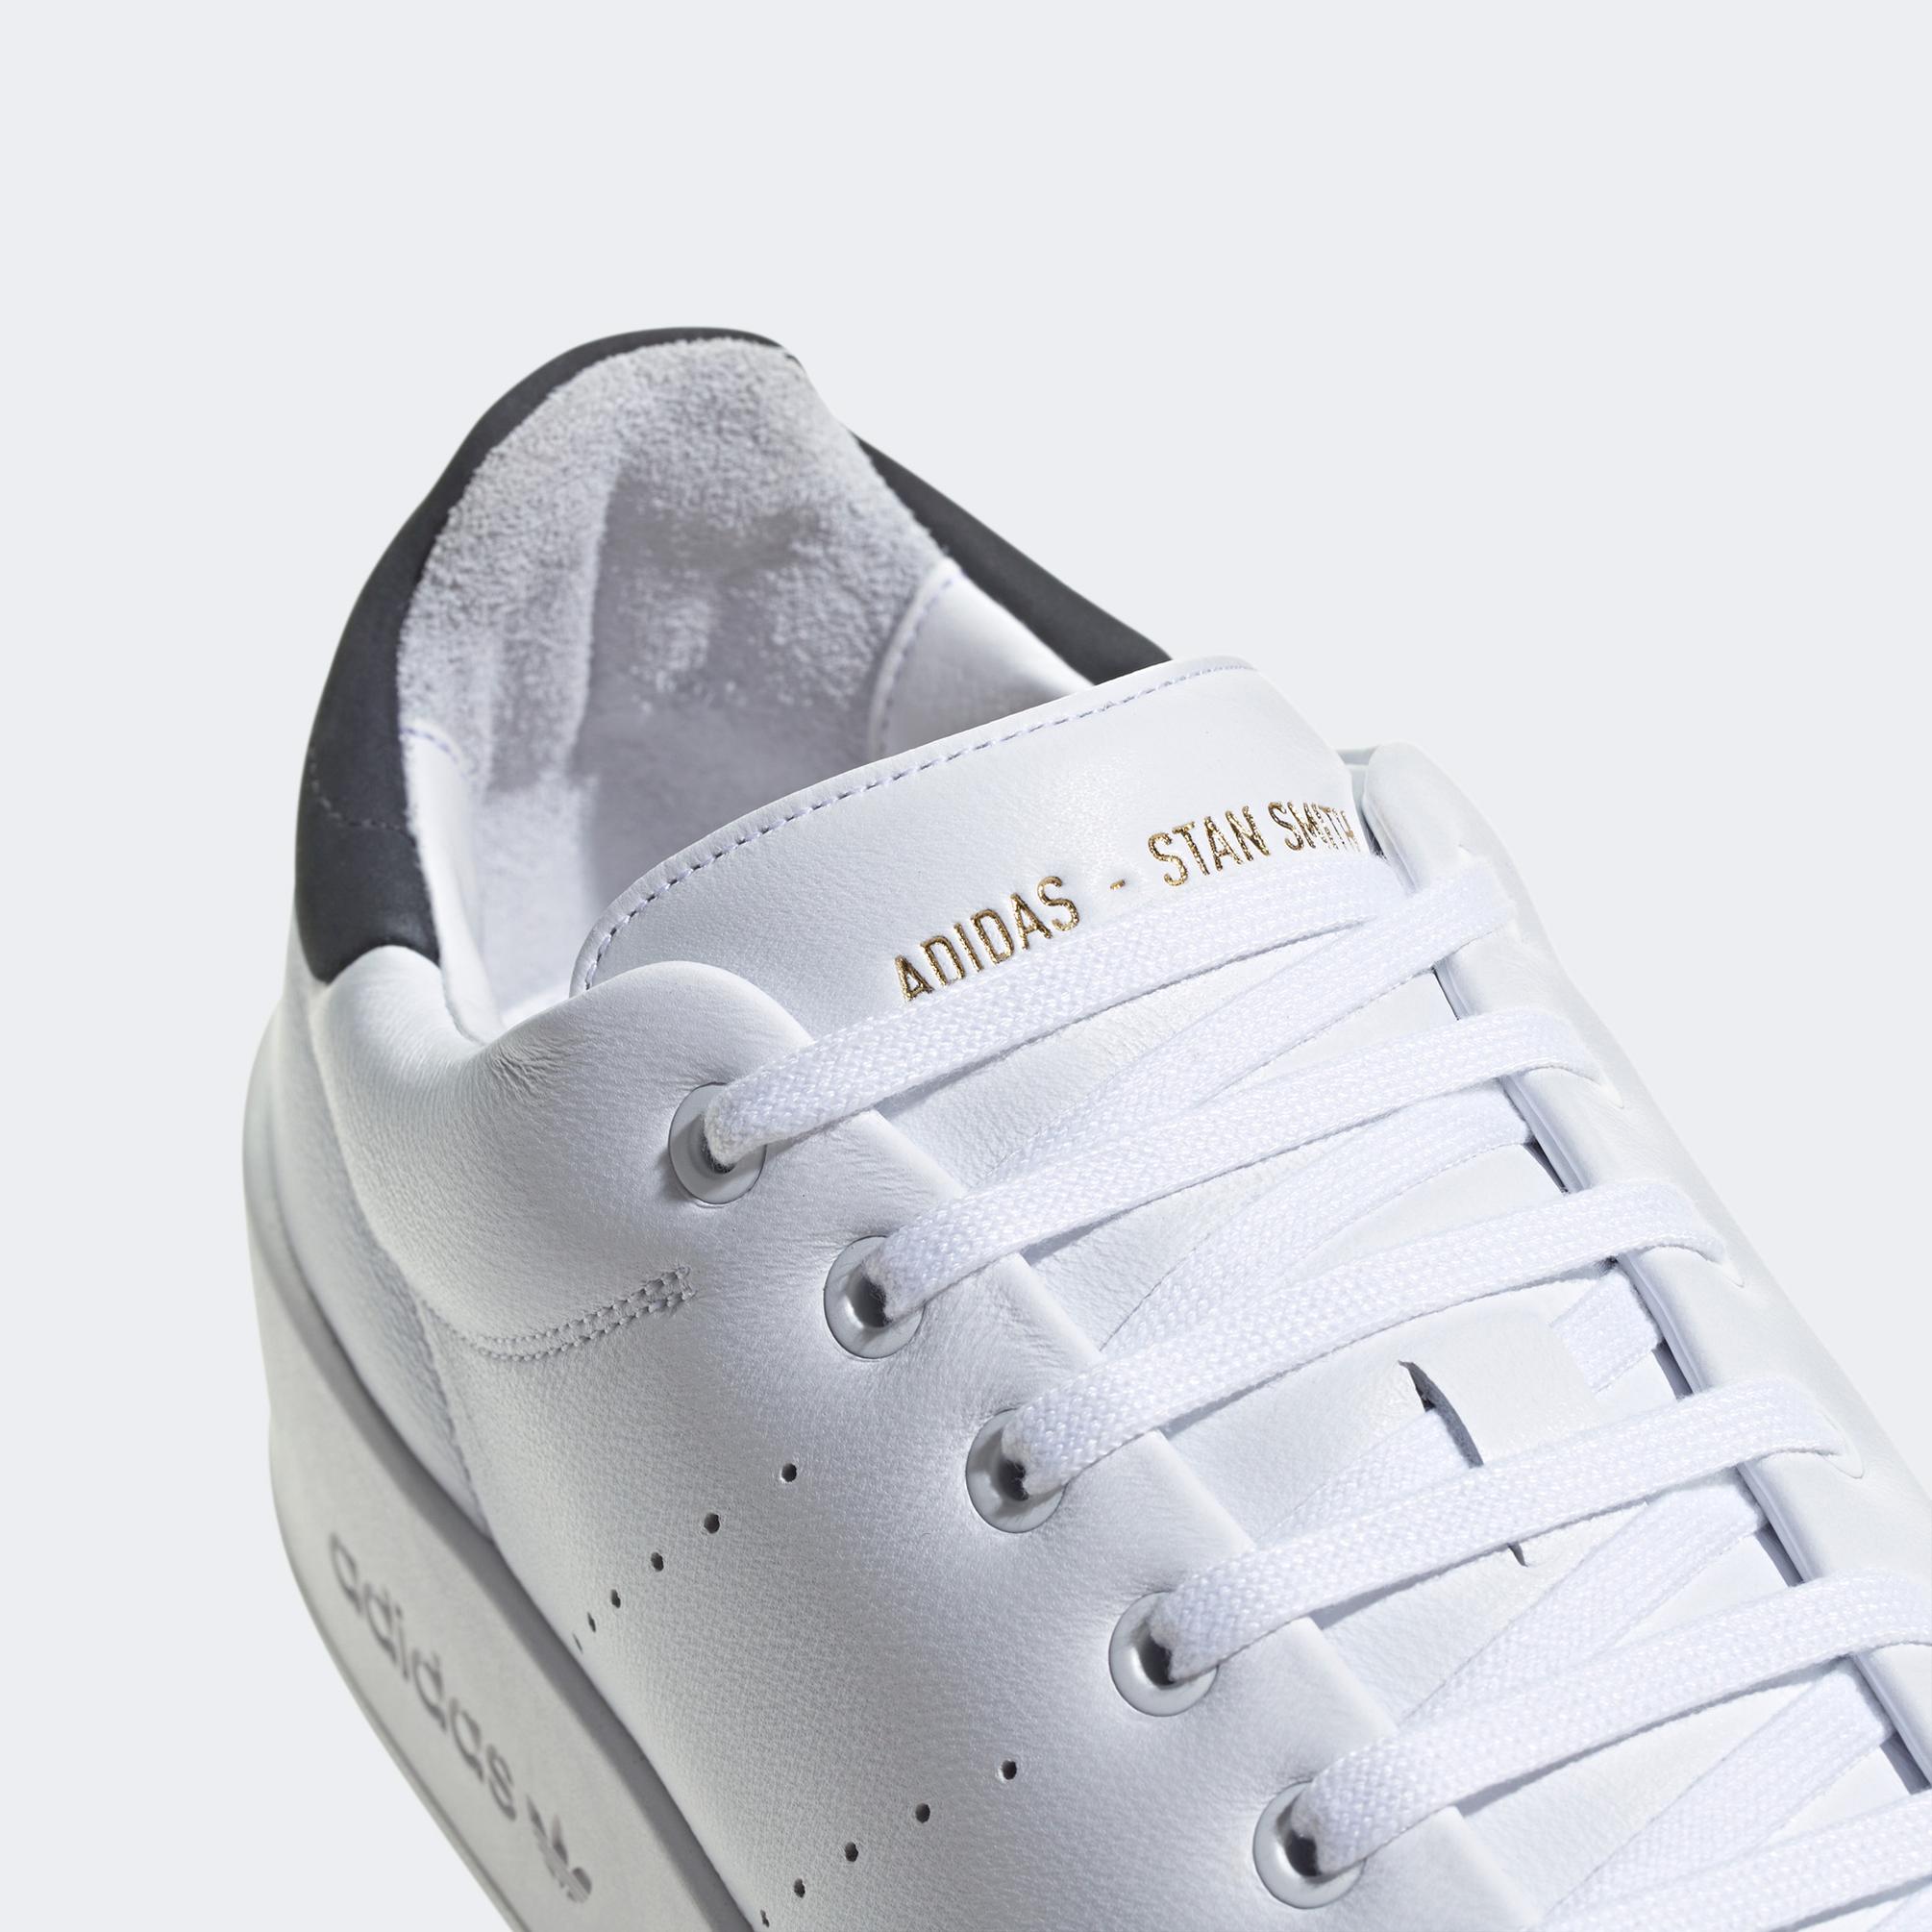  adidas Stan Smith Recon Unisex Beyaz Spor Ayakkabı